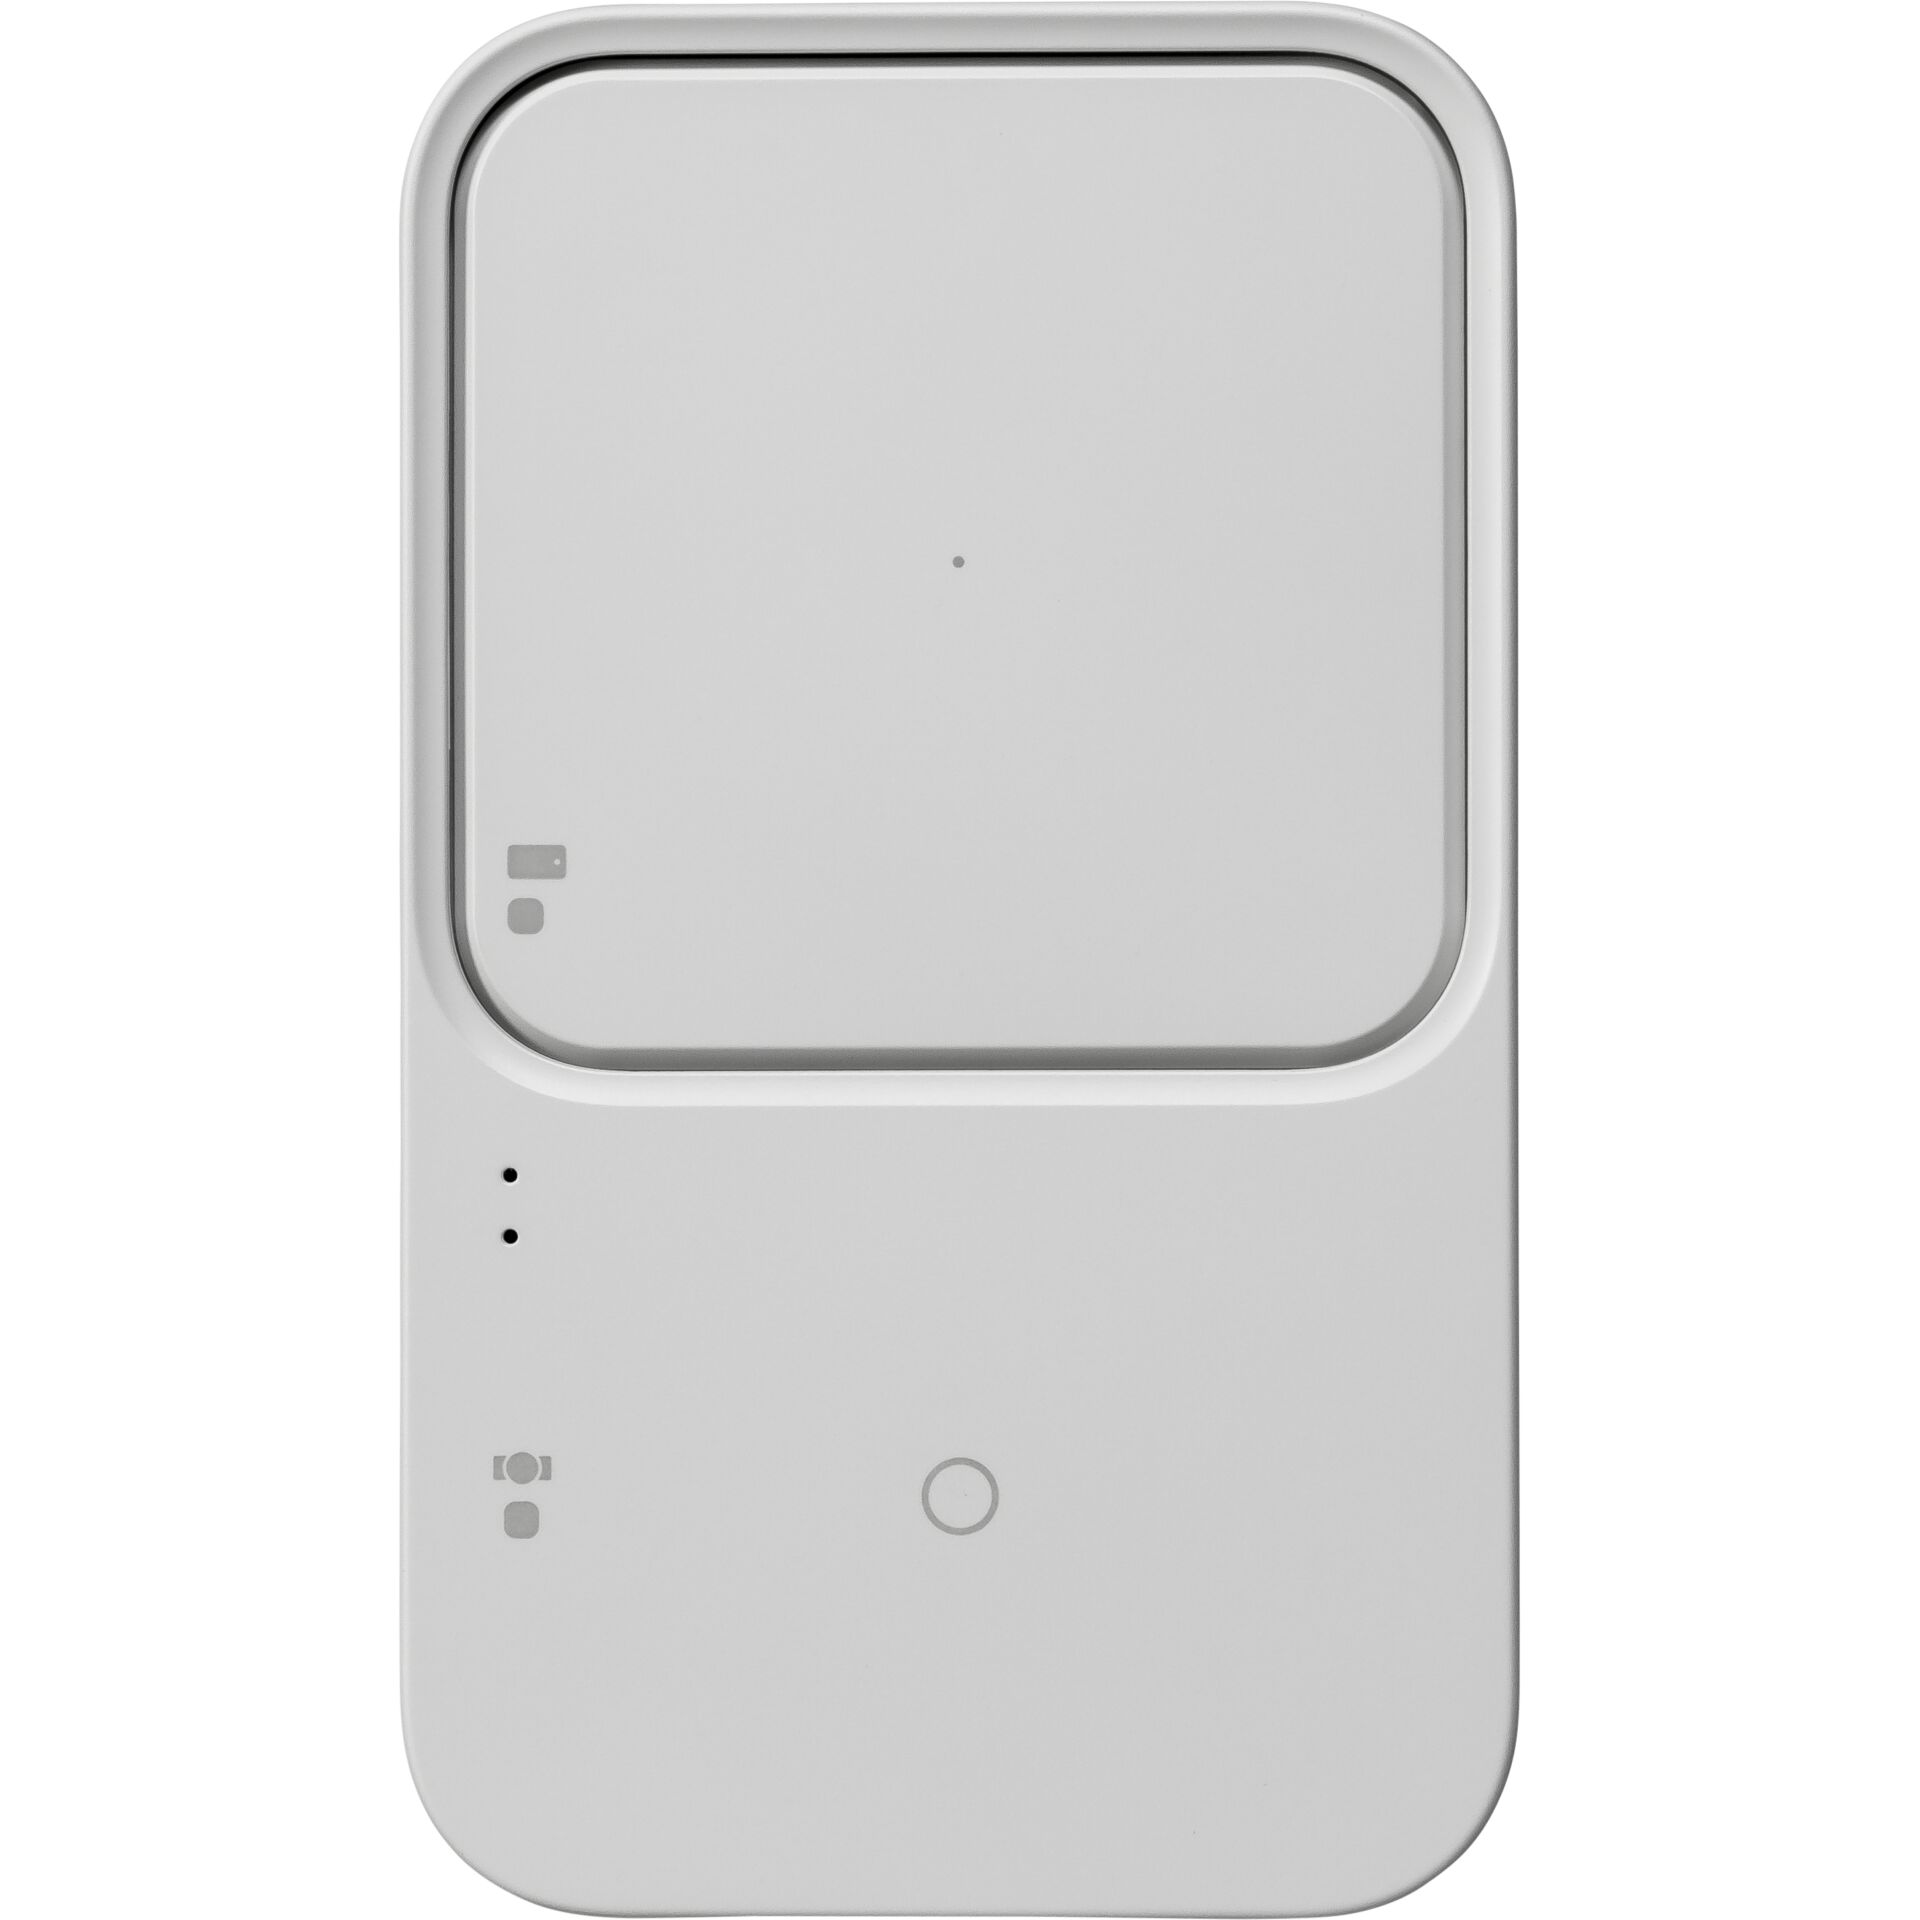 Samsung Wireless caricabatt. Duo EP-P5400, bianco